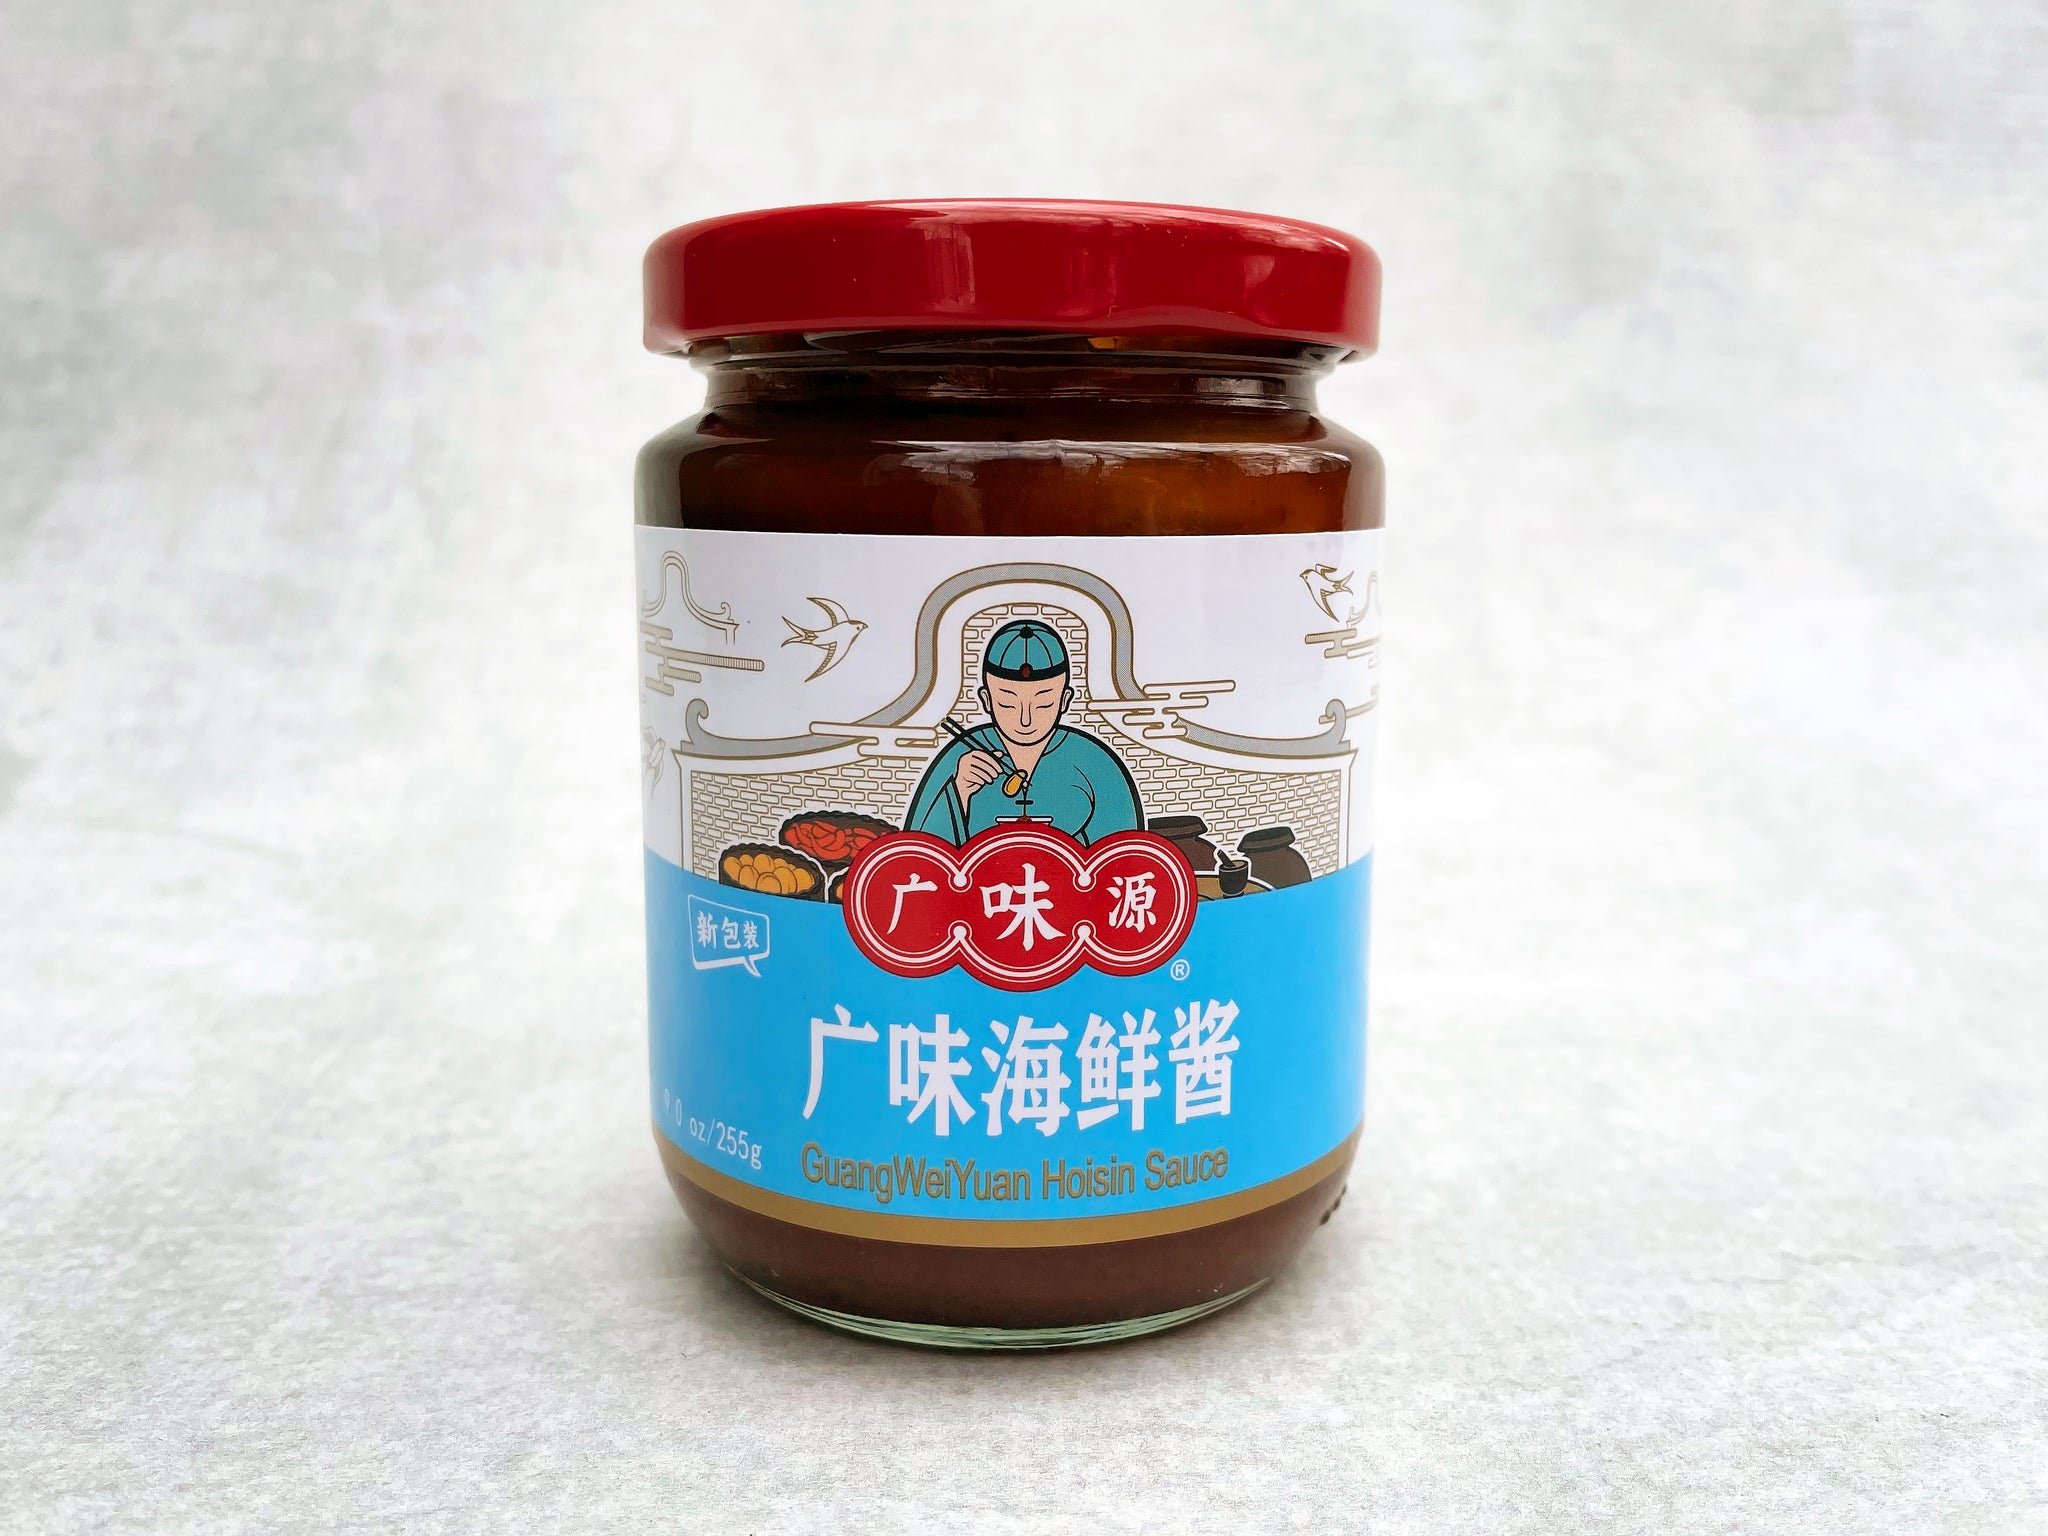 Guangwei Yuan Hoisin Sauce